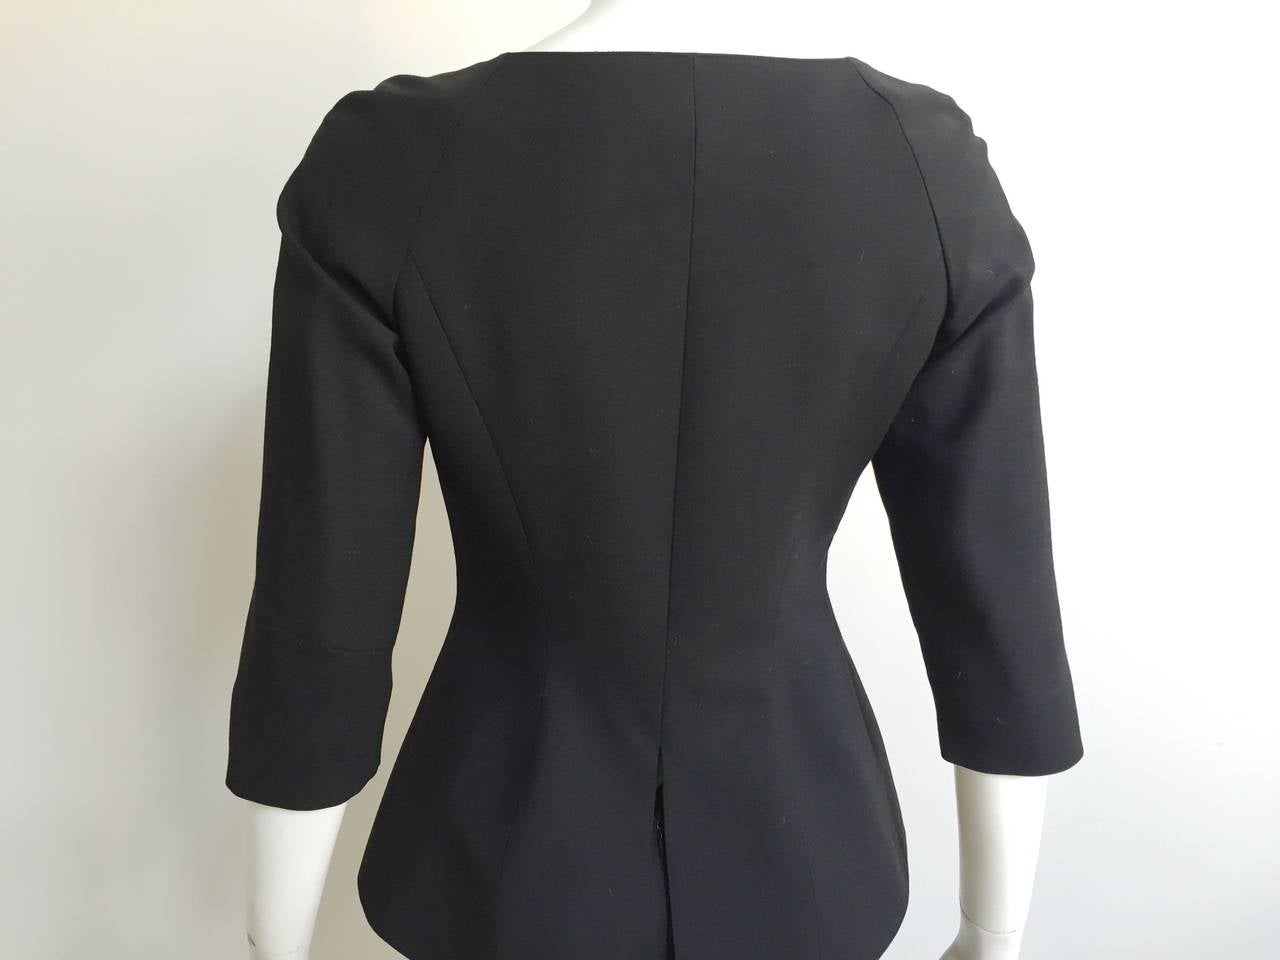 Lolita Lempicka Paris 80s black skirt suit size 4. 4